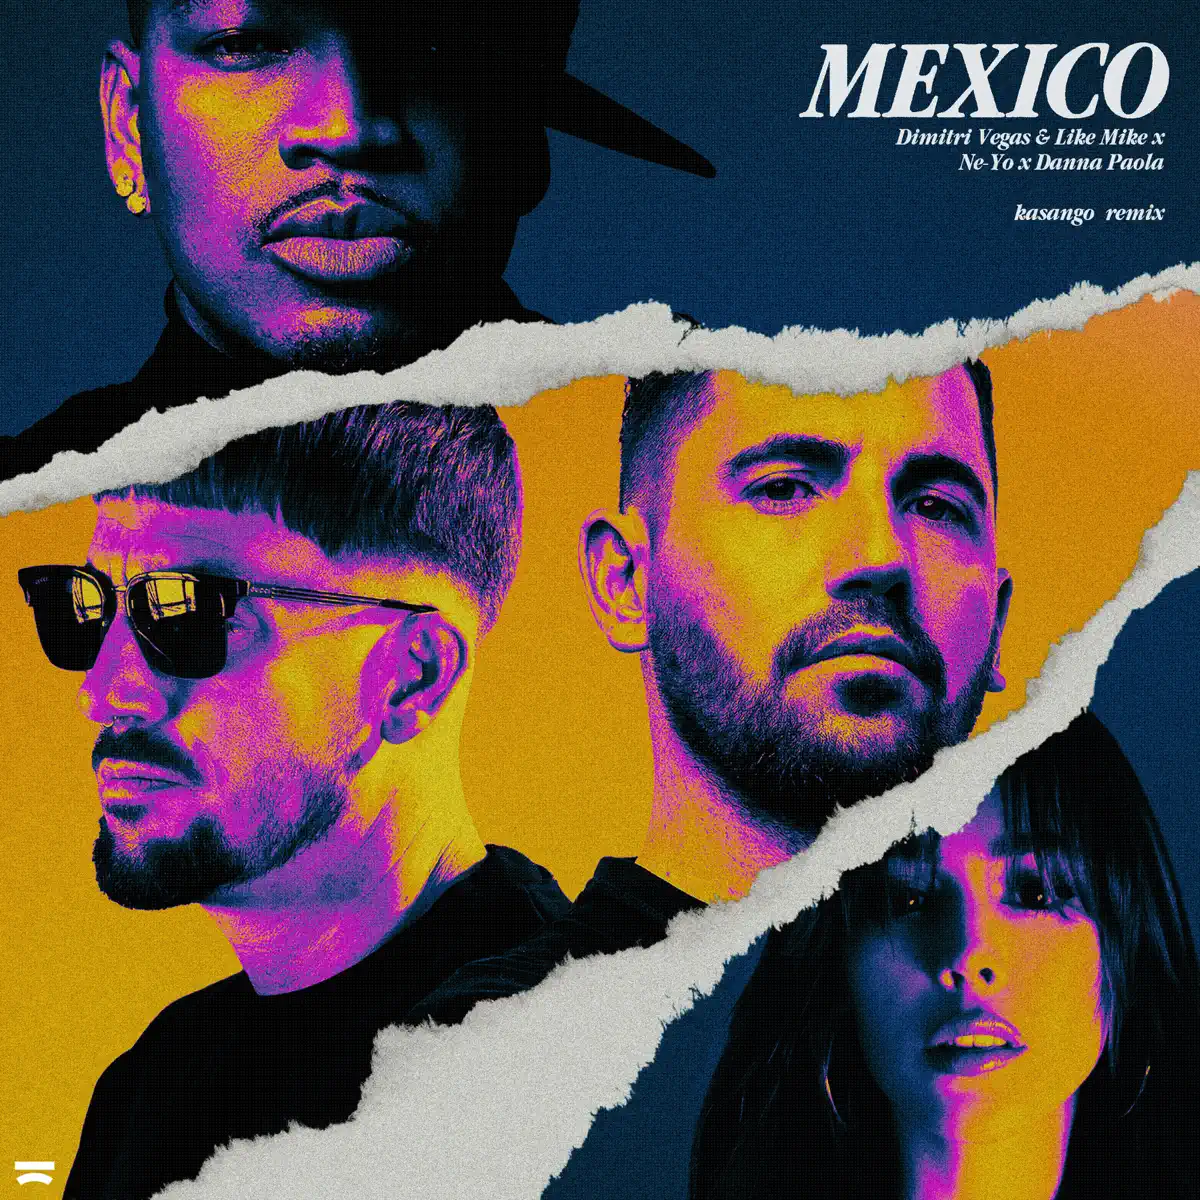 Dimitri Vegas & Like Mike & Ne-Yo - Mexico (feat. Danna Paola) [Kasango Remix] - Single (2023) [iTunes Plus AAC M4A]-新房子